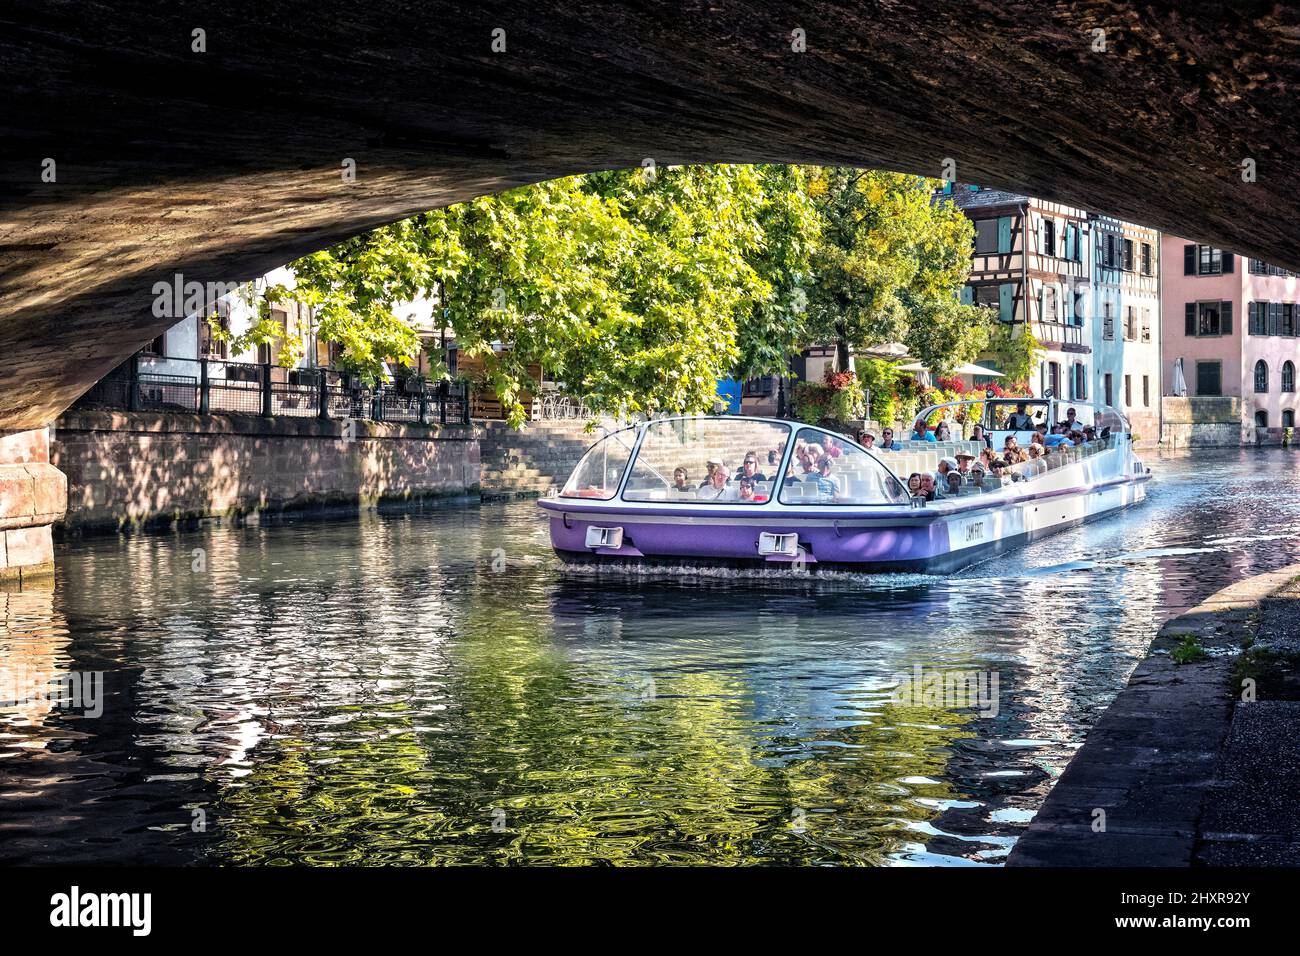 Frankreich, Straßburg, das historische Zentrum, das von der UNESCO zum Weltkulturerbe erklärt wurde, der Fluss ill unter den Ponts Couverts. Stockfoto